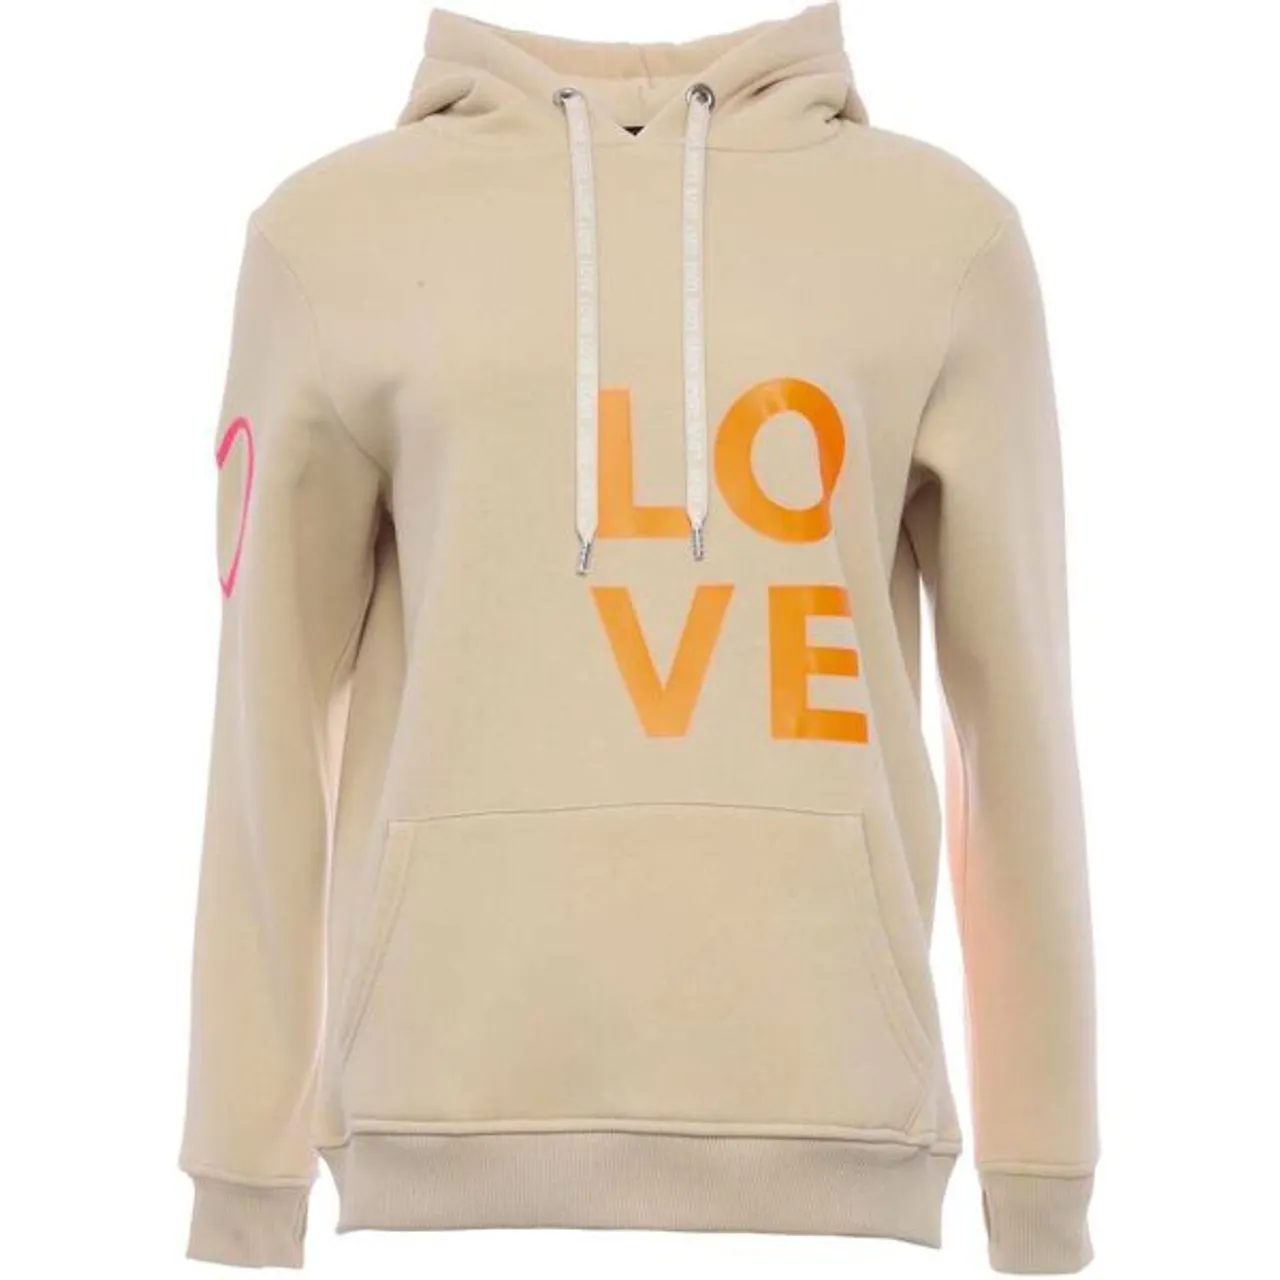 Kapuzensweatshirt ZWILLINGSHERZ Gr. SM, beige Damen Sweatshirts mit Aufschrift "LOVE" in Neon